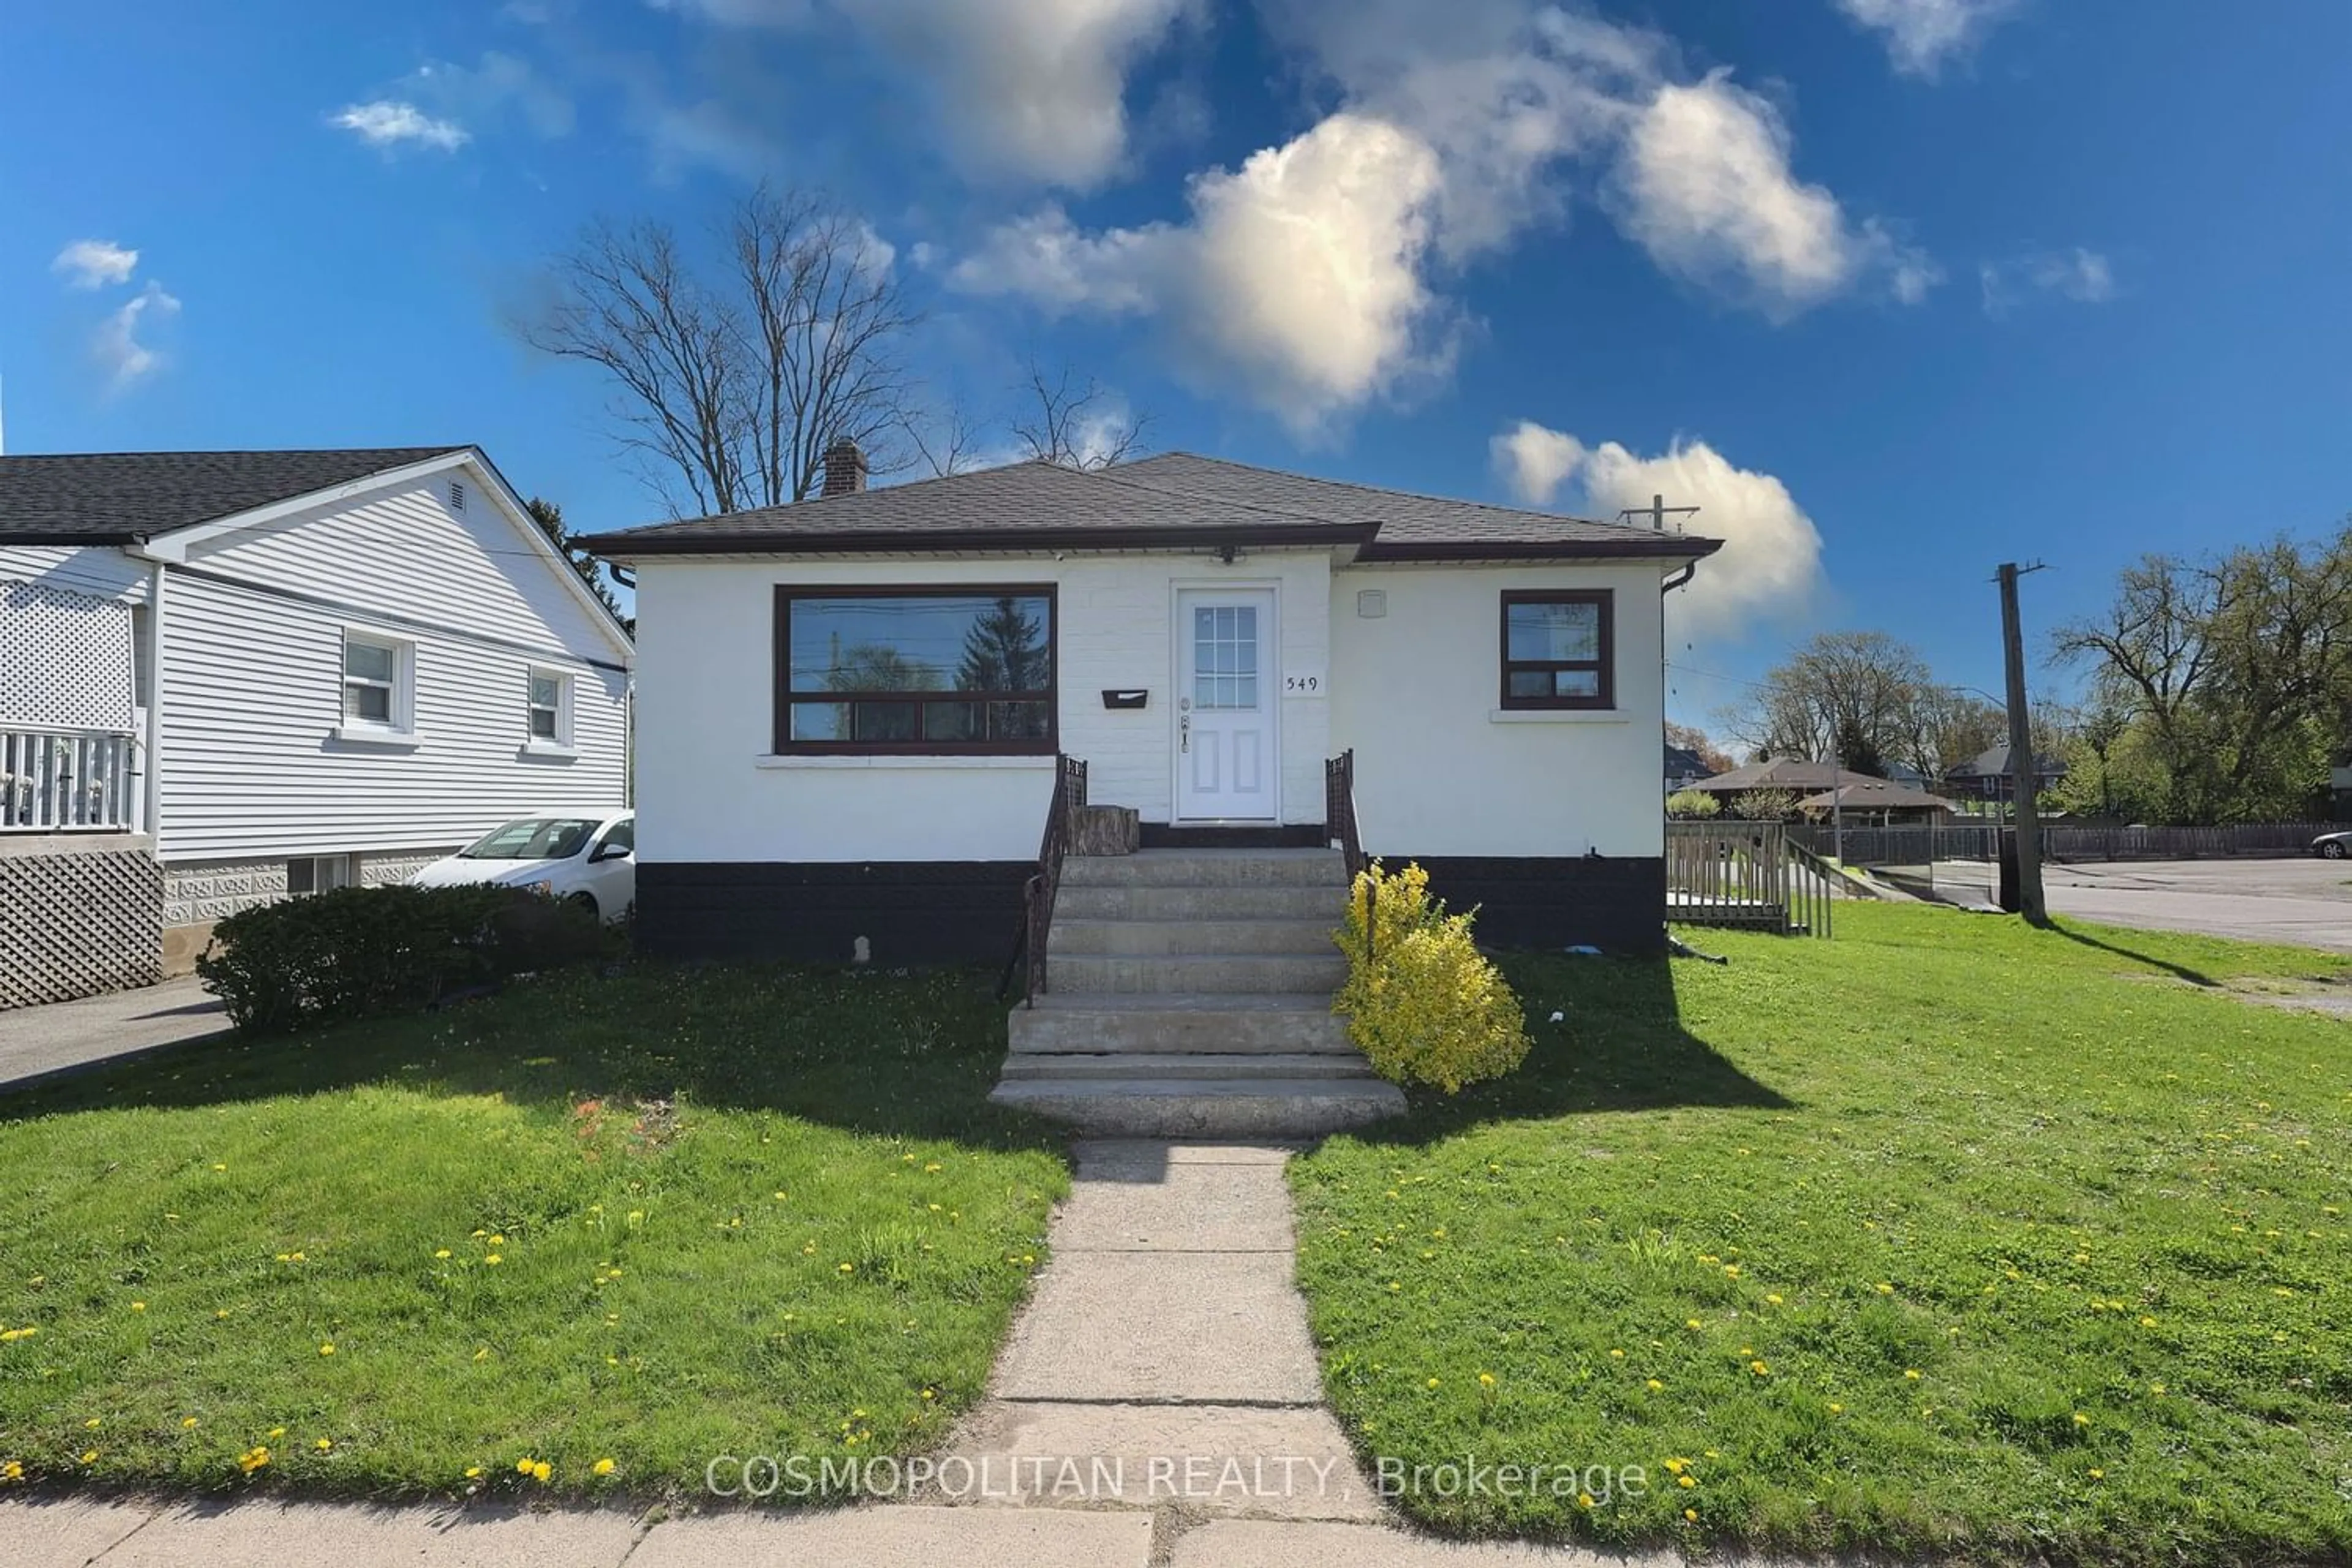 Frontside or backside of a home for 549 Elm St, Port Colborne Ontario L3K 4P5